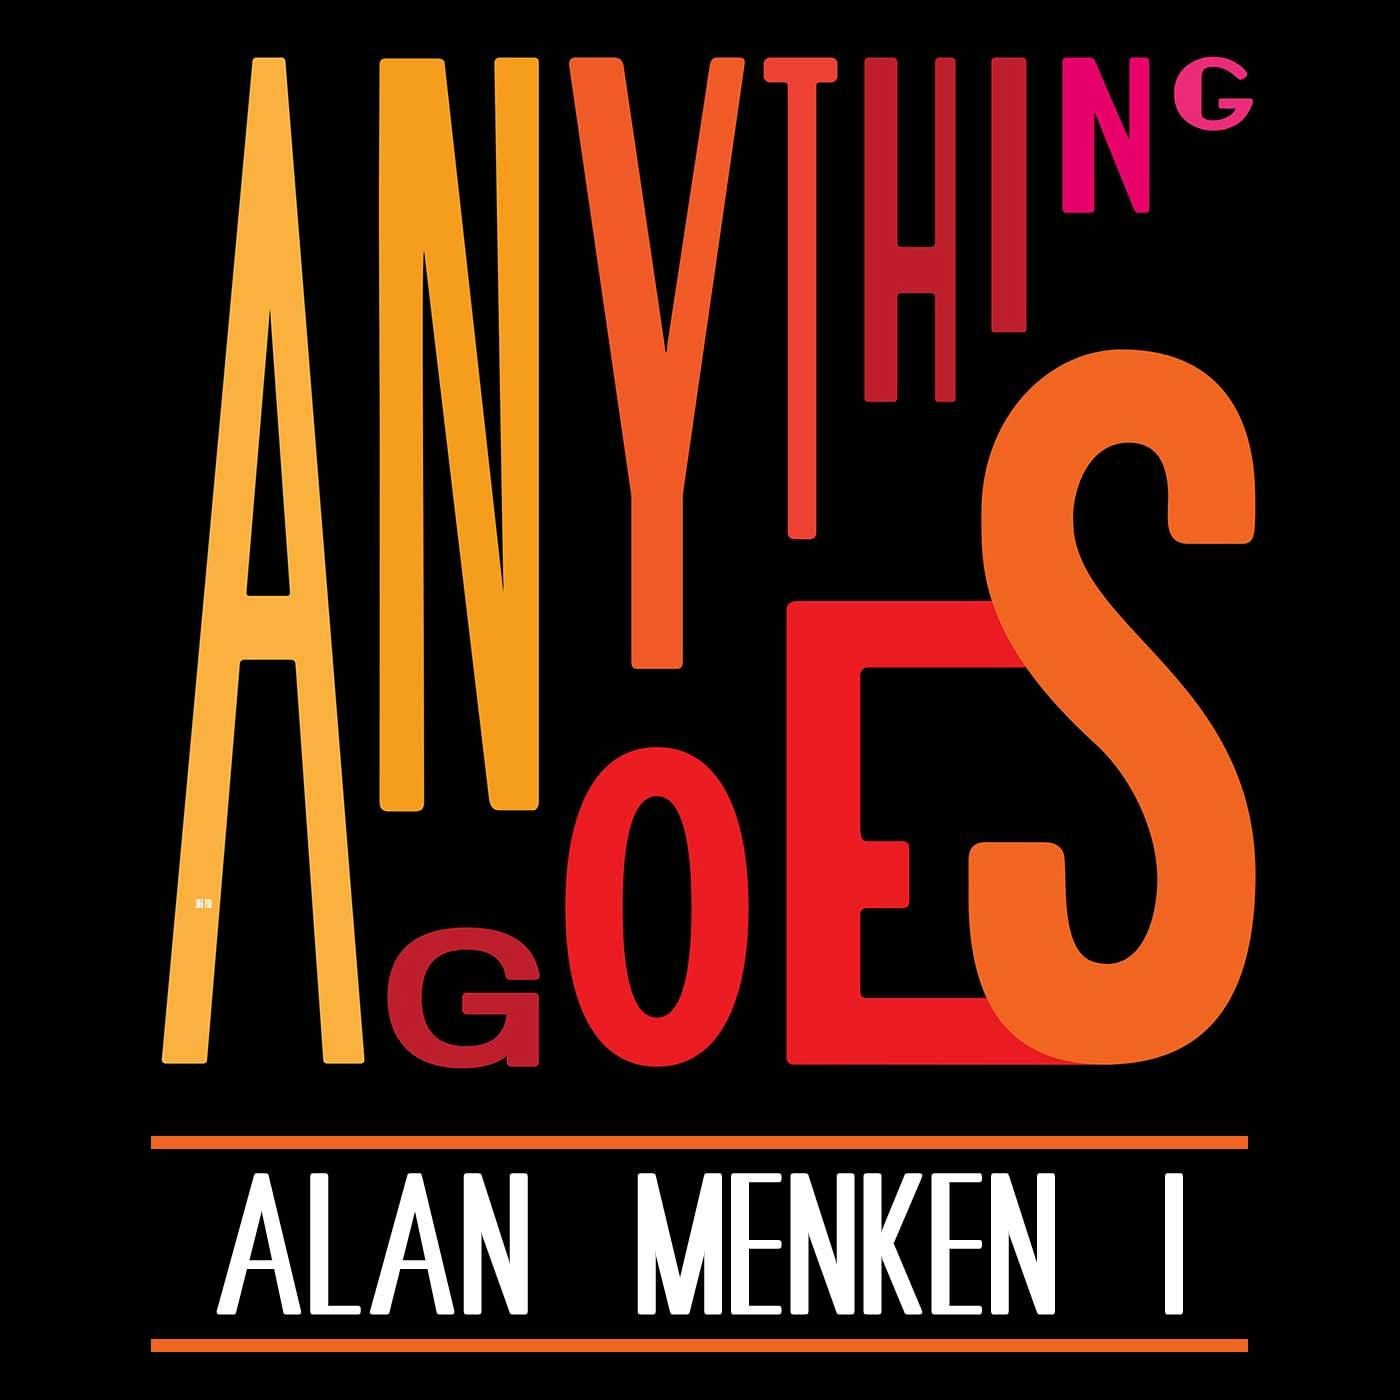 55 Alan Menken I